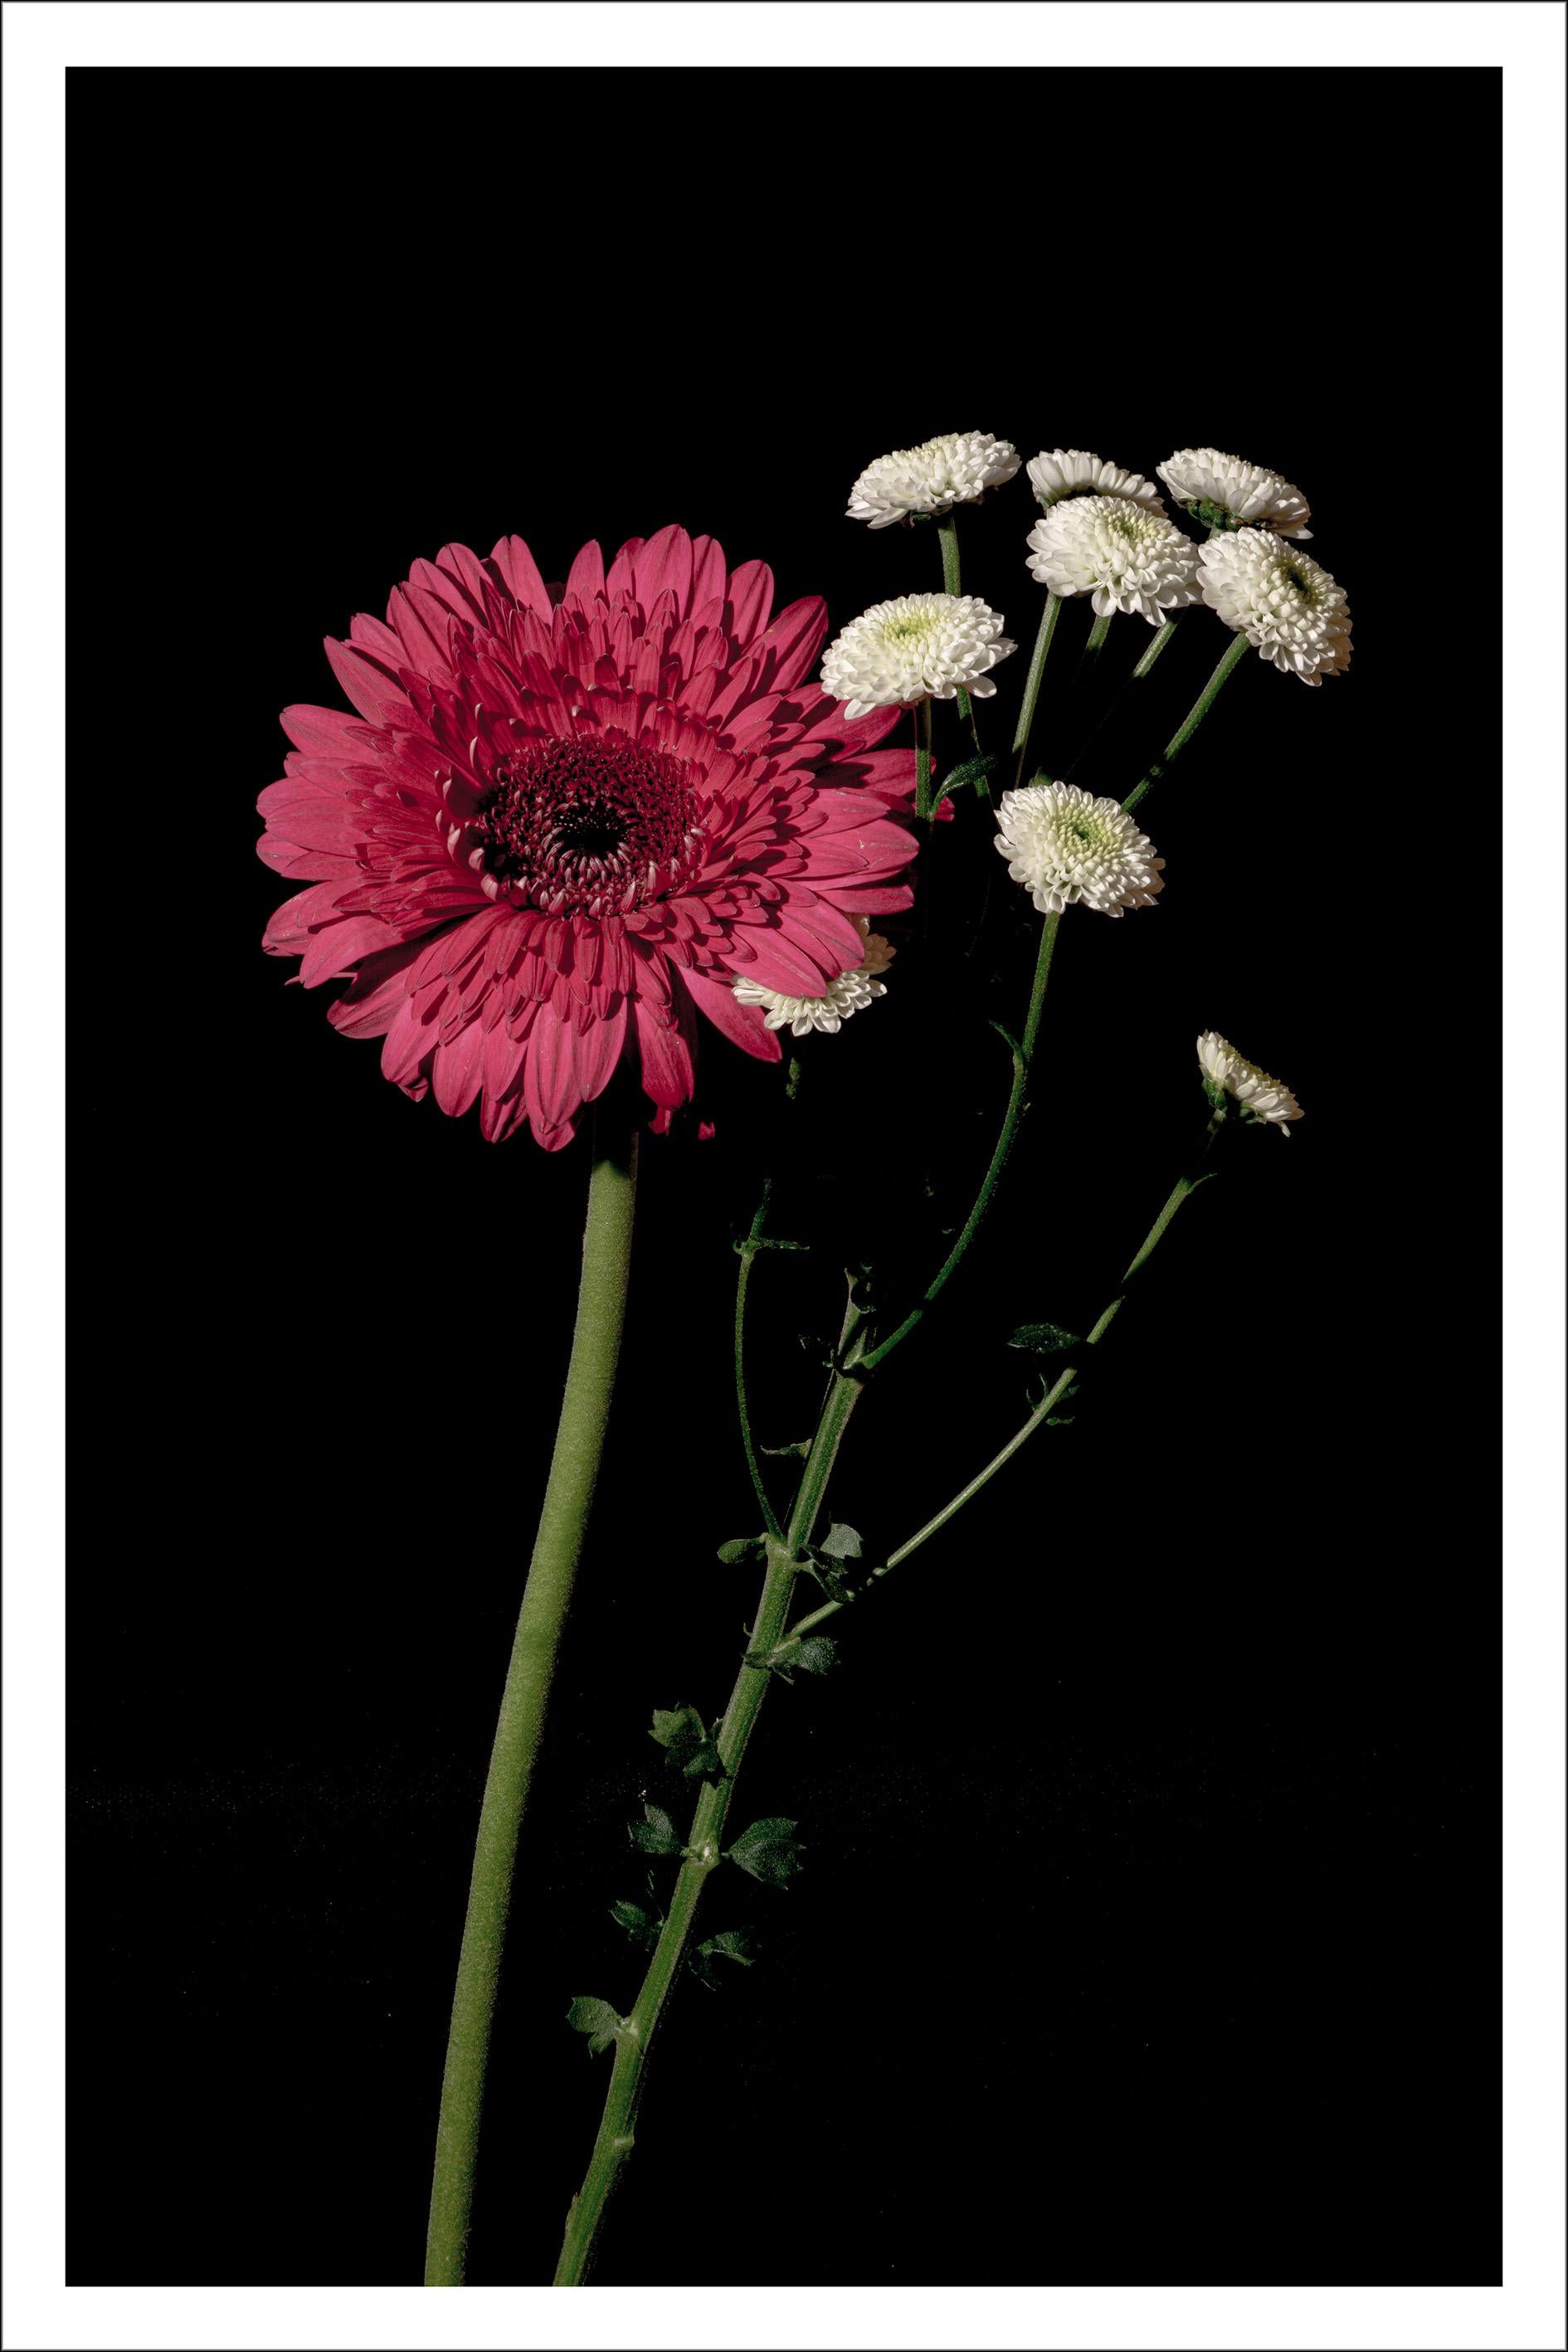 Rosa und weiße zarte Blumen, schwarzer Hintergrund, heller eleganter Giclée-Druck